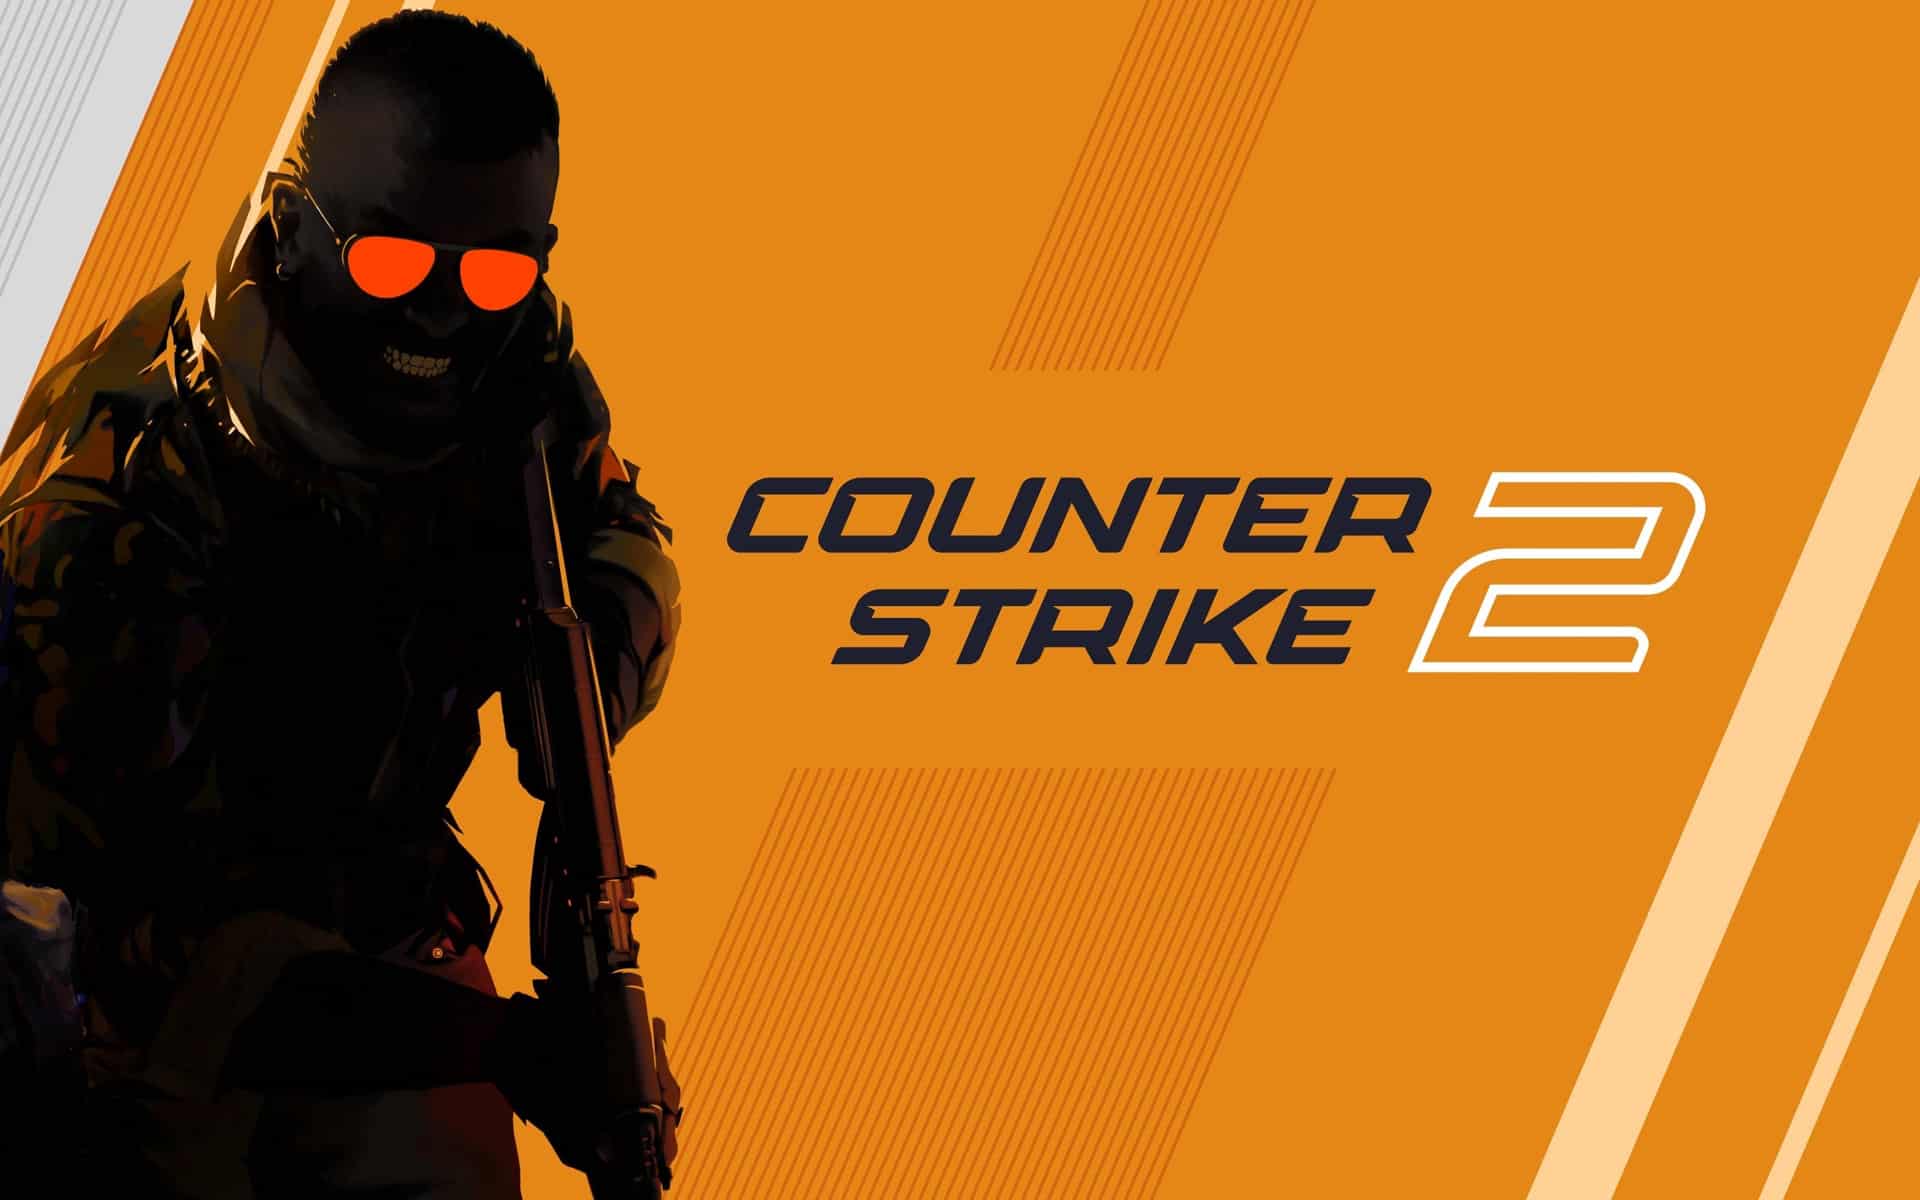 Este bug no jogo “Counter-Strike 2” revelou os endereços IP dos jogadores